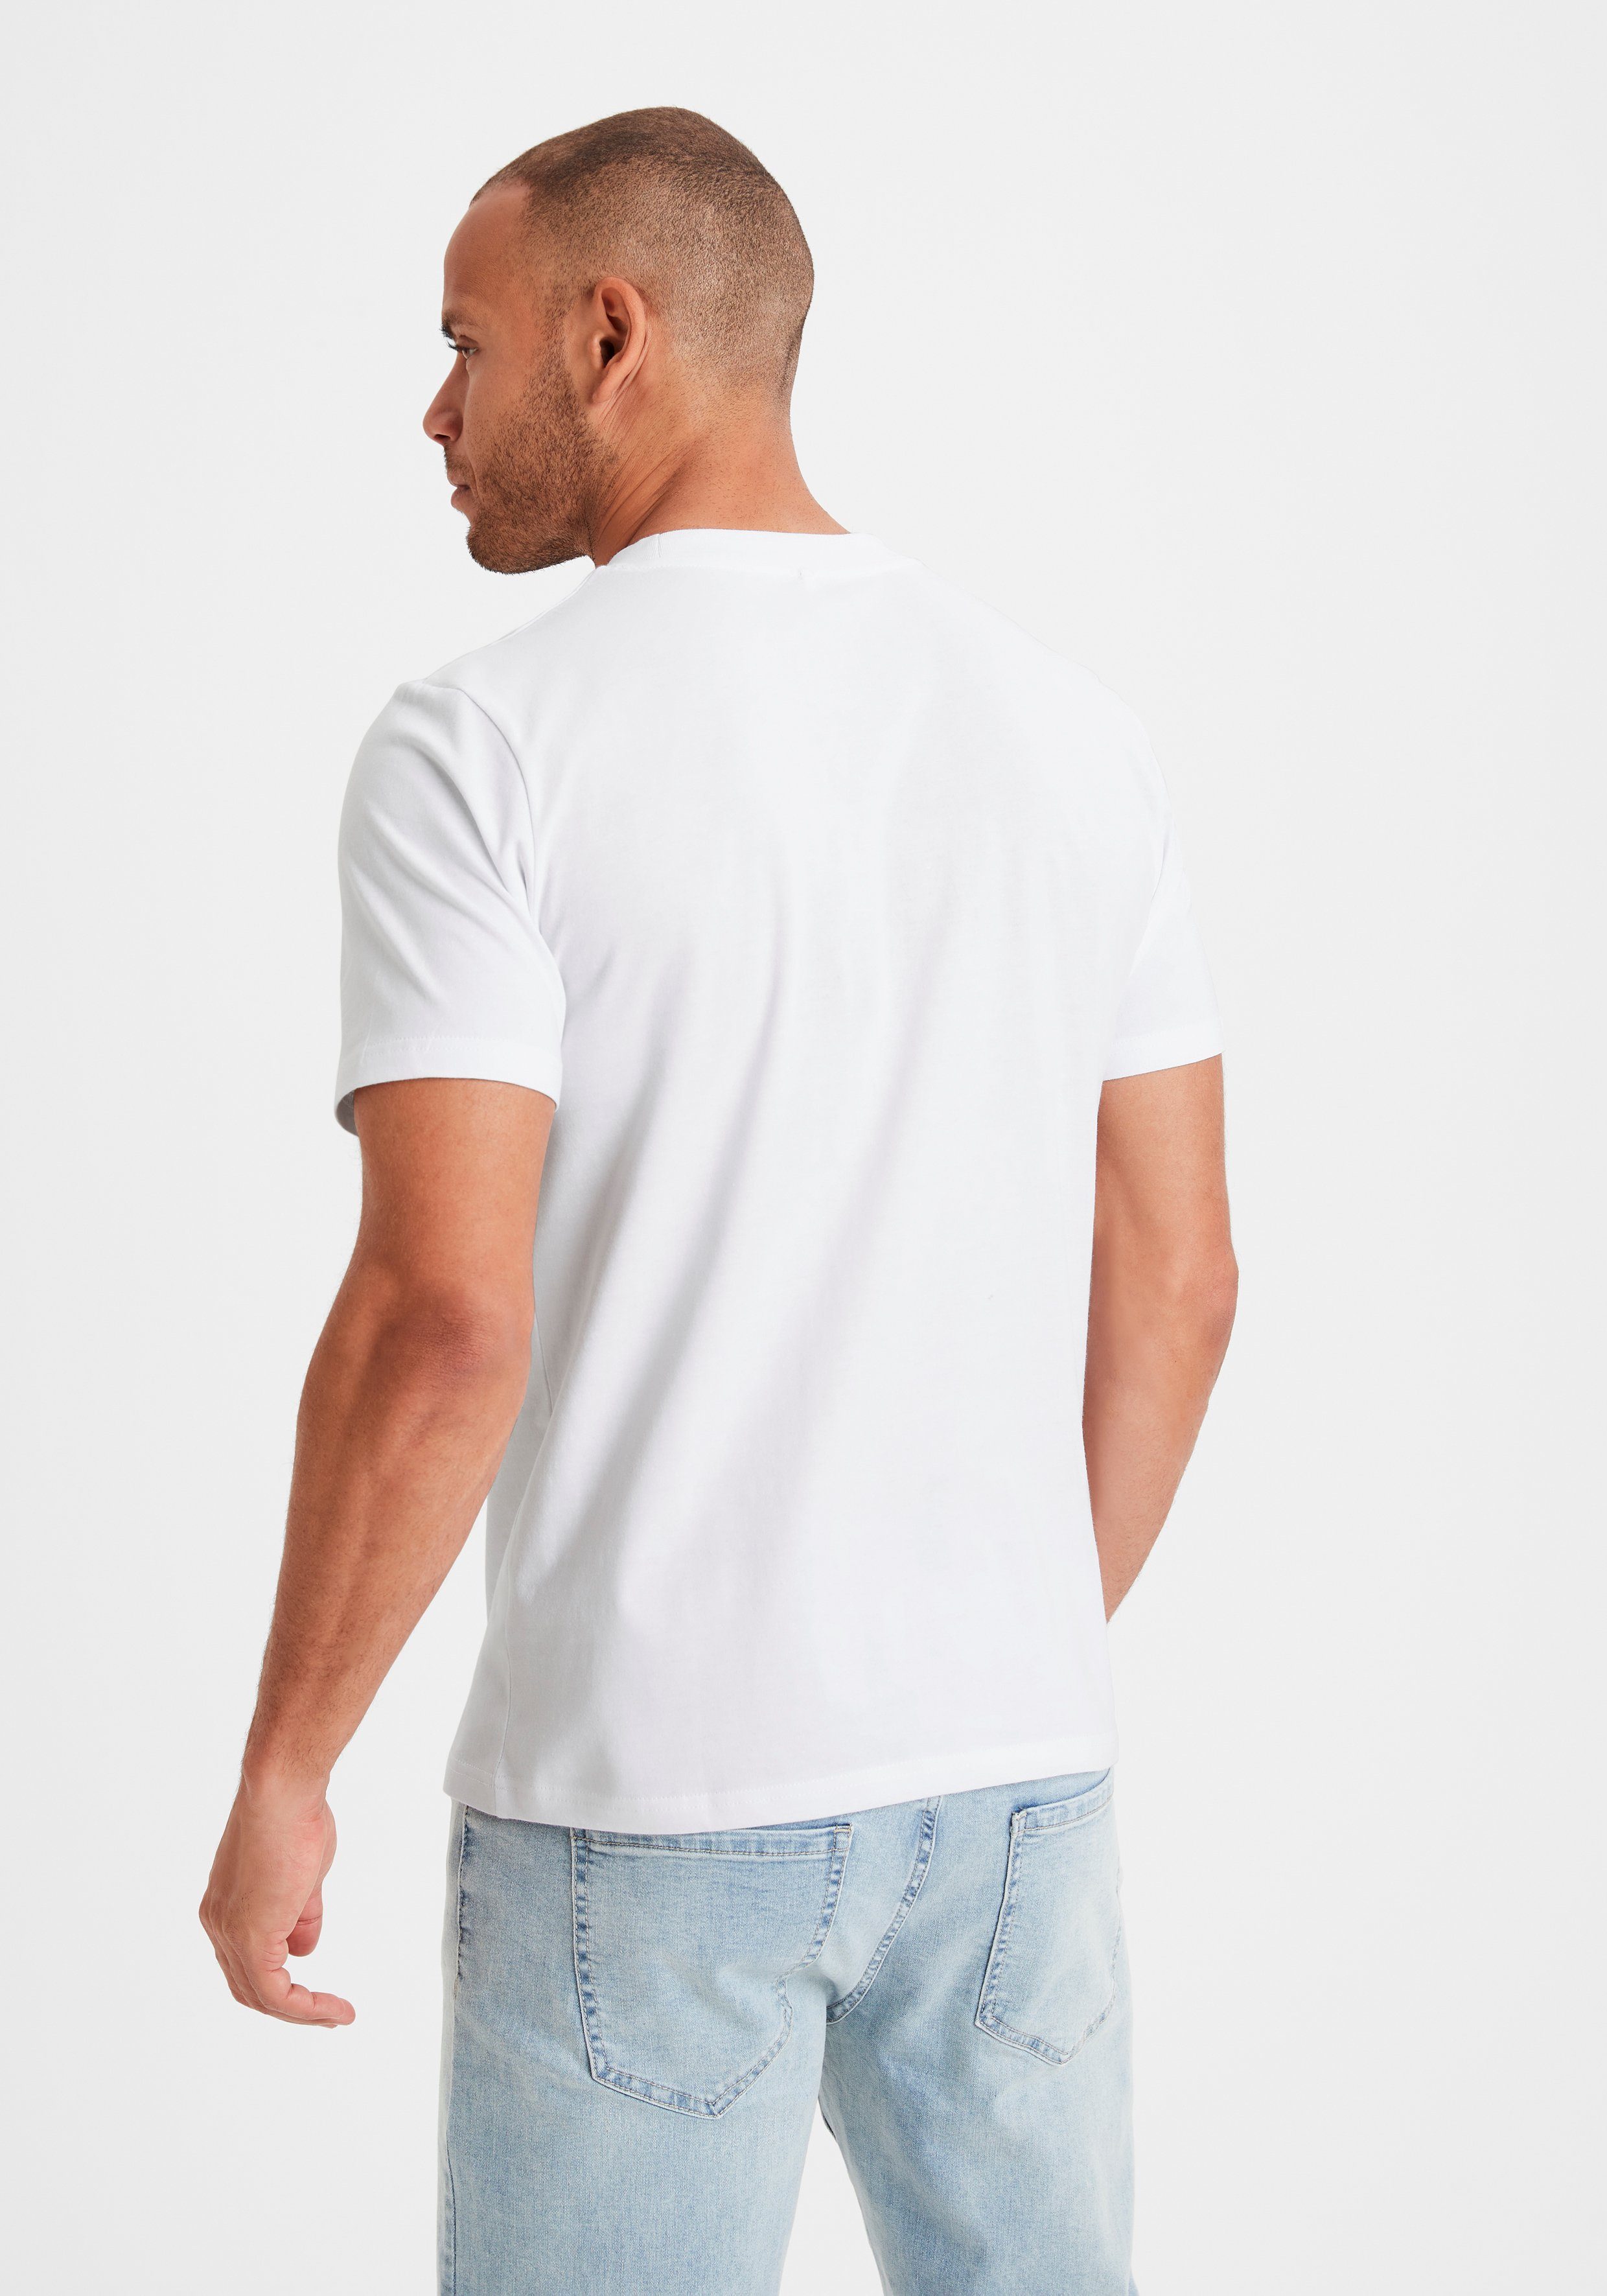 KangaROOS T-Shirt weiß in / Form (2er-Pack) blau Must-Have klassischer ein